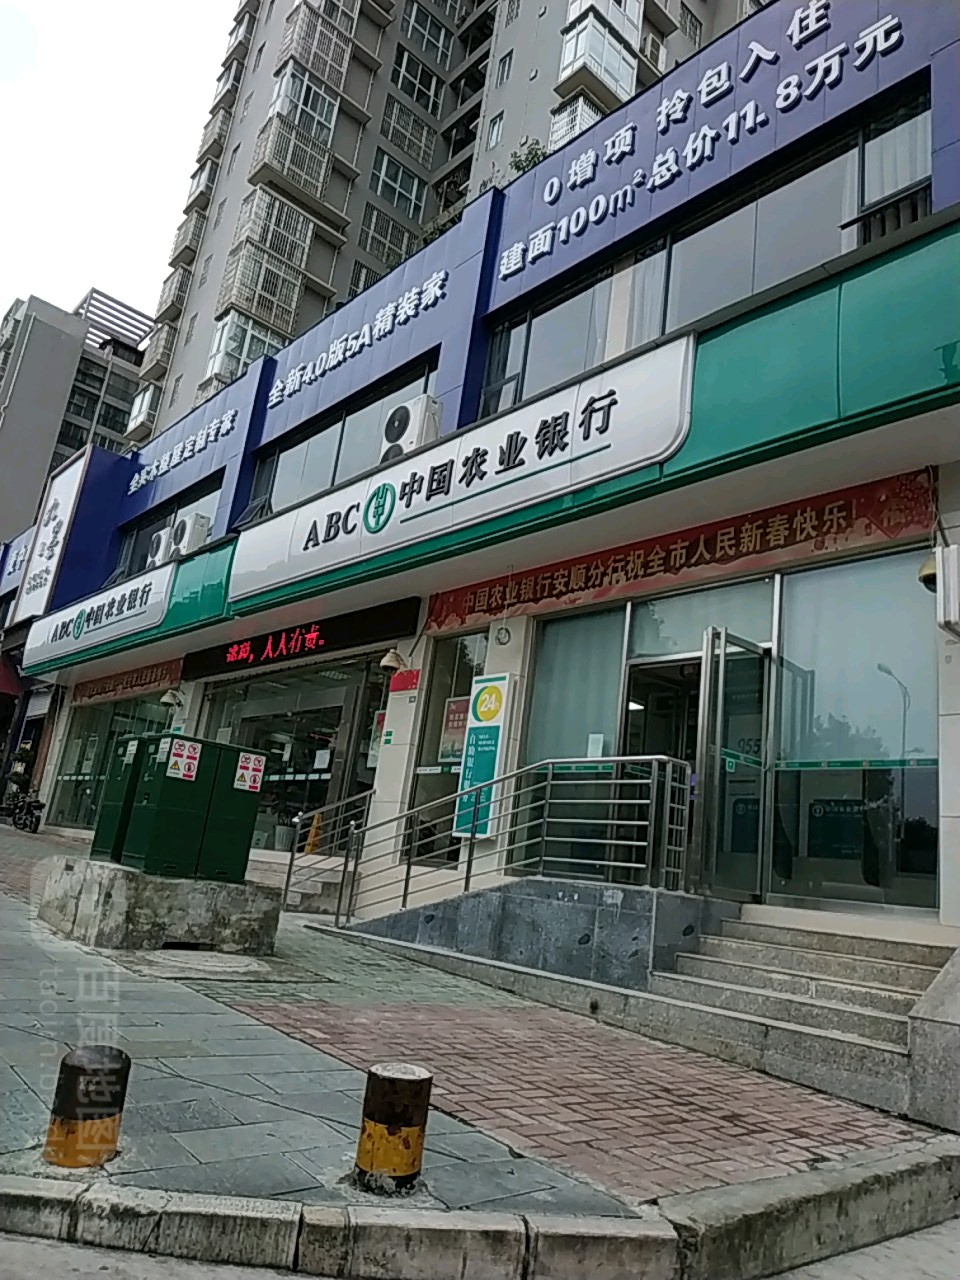 中國農業銀行24小時自助銀行(安順東郊支行)